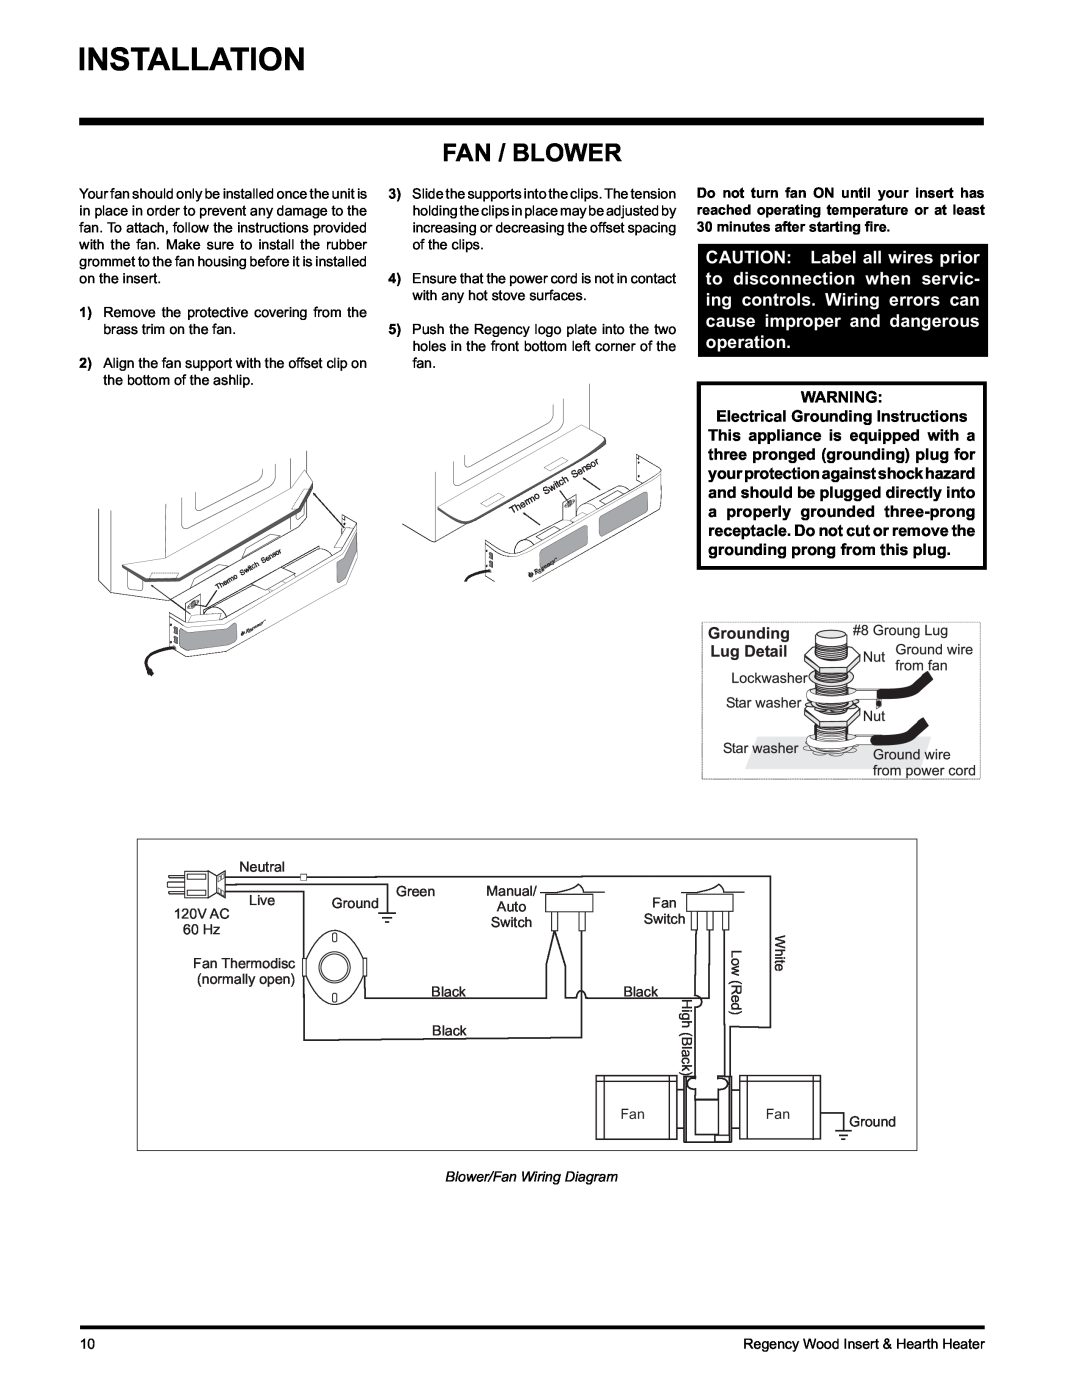 Regency I1100S installation manual Installation, Fan / Blower 